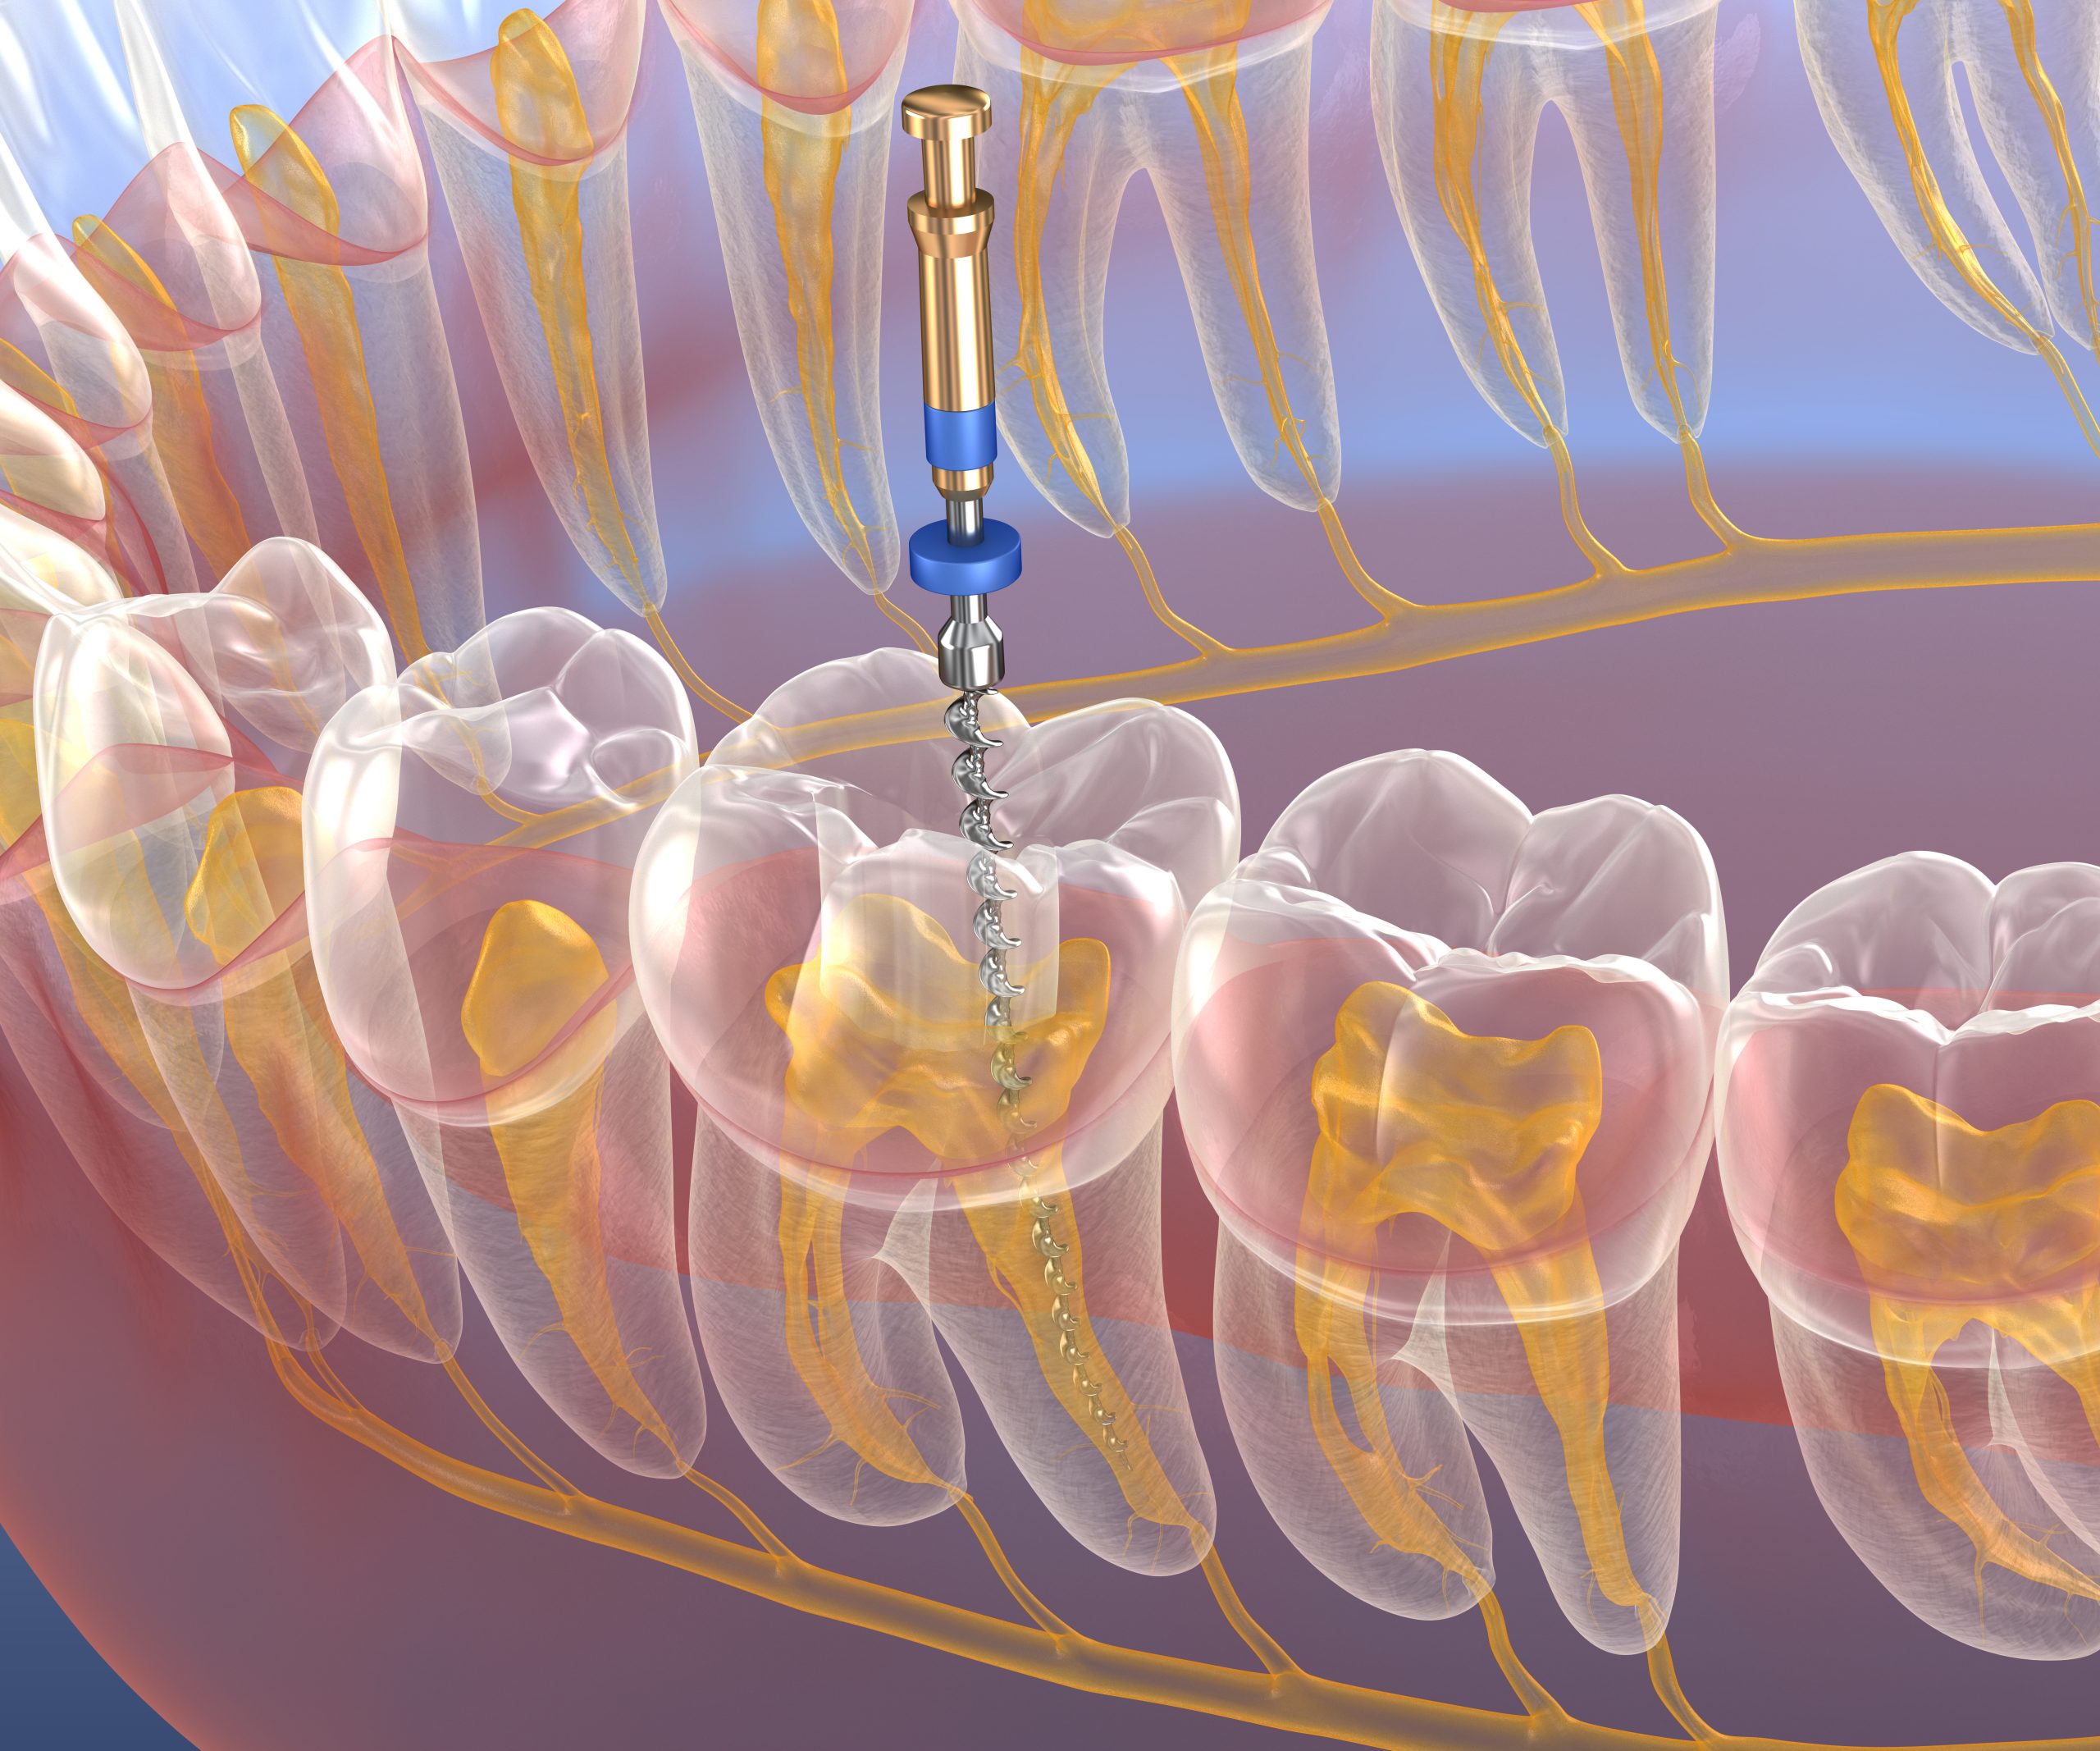 عصب کشی دندان 5 و بعد از آن روکش